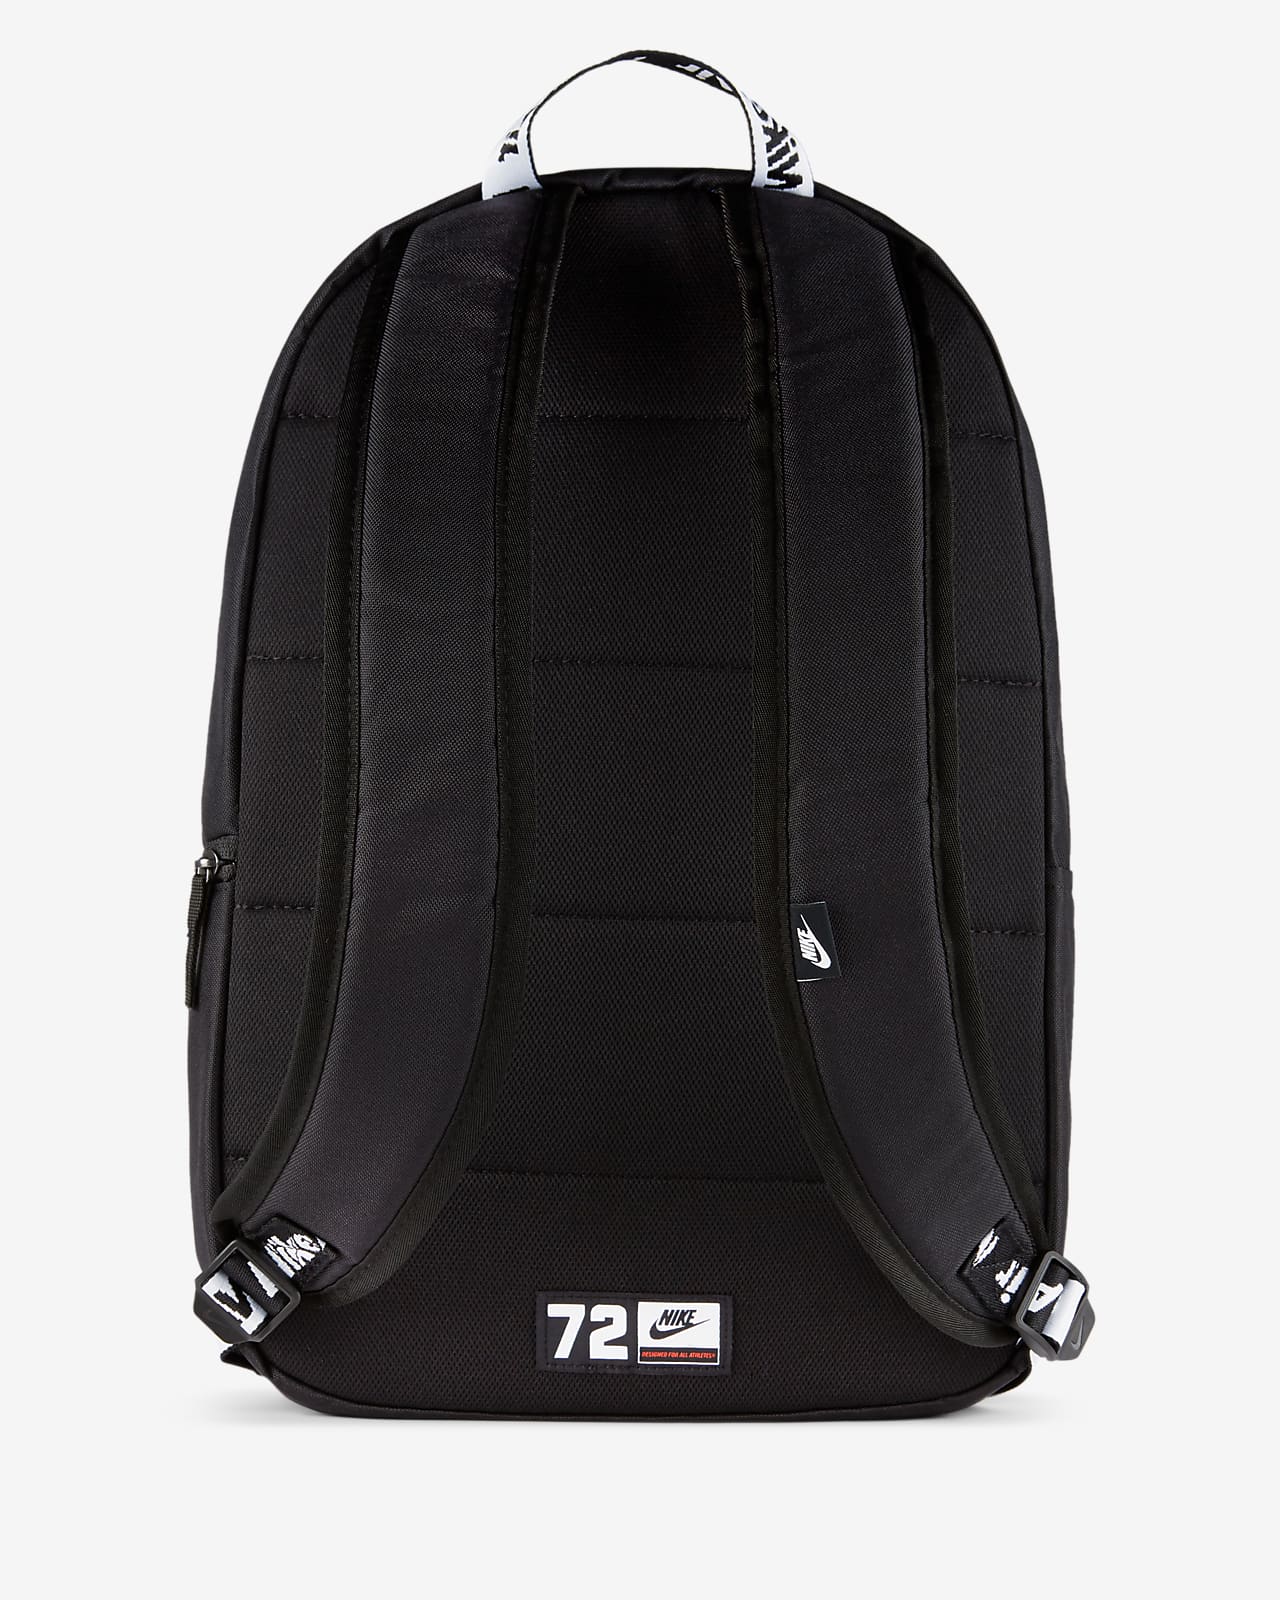 nike air heritage 2.0 backpack black